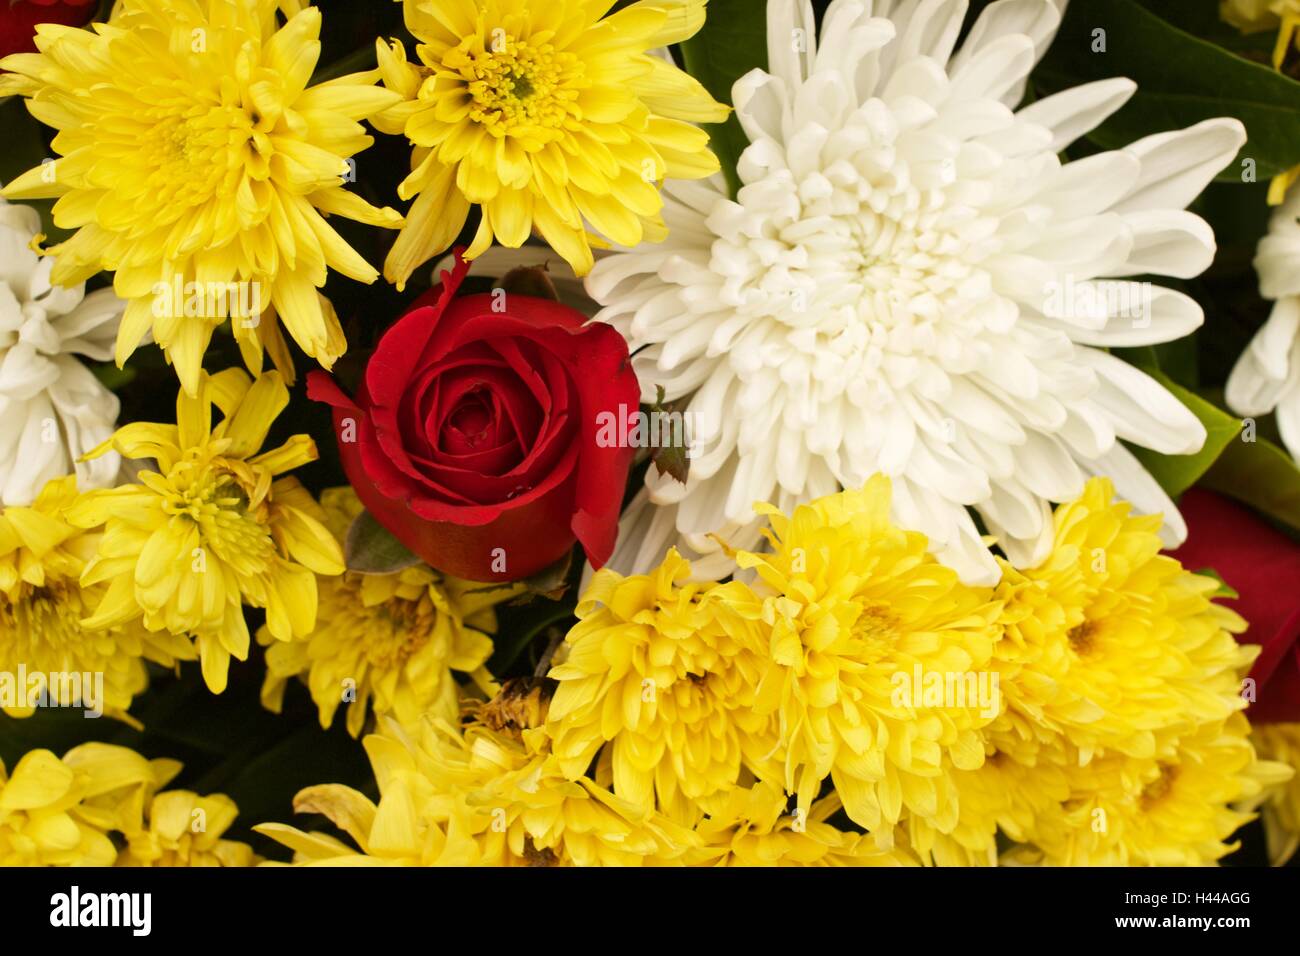 Red rose yellow spider chrysanthemum and white chrysanthemum flower mixed Stock Photo